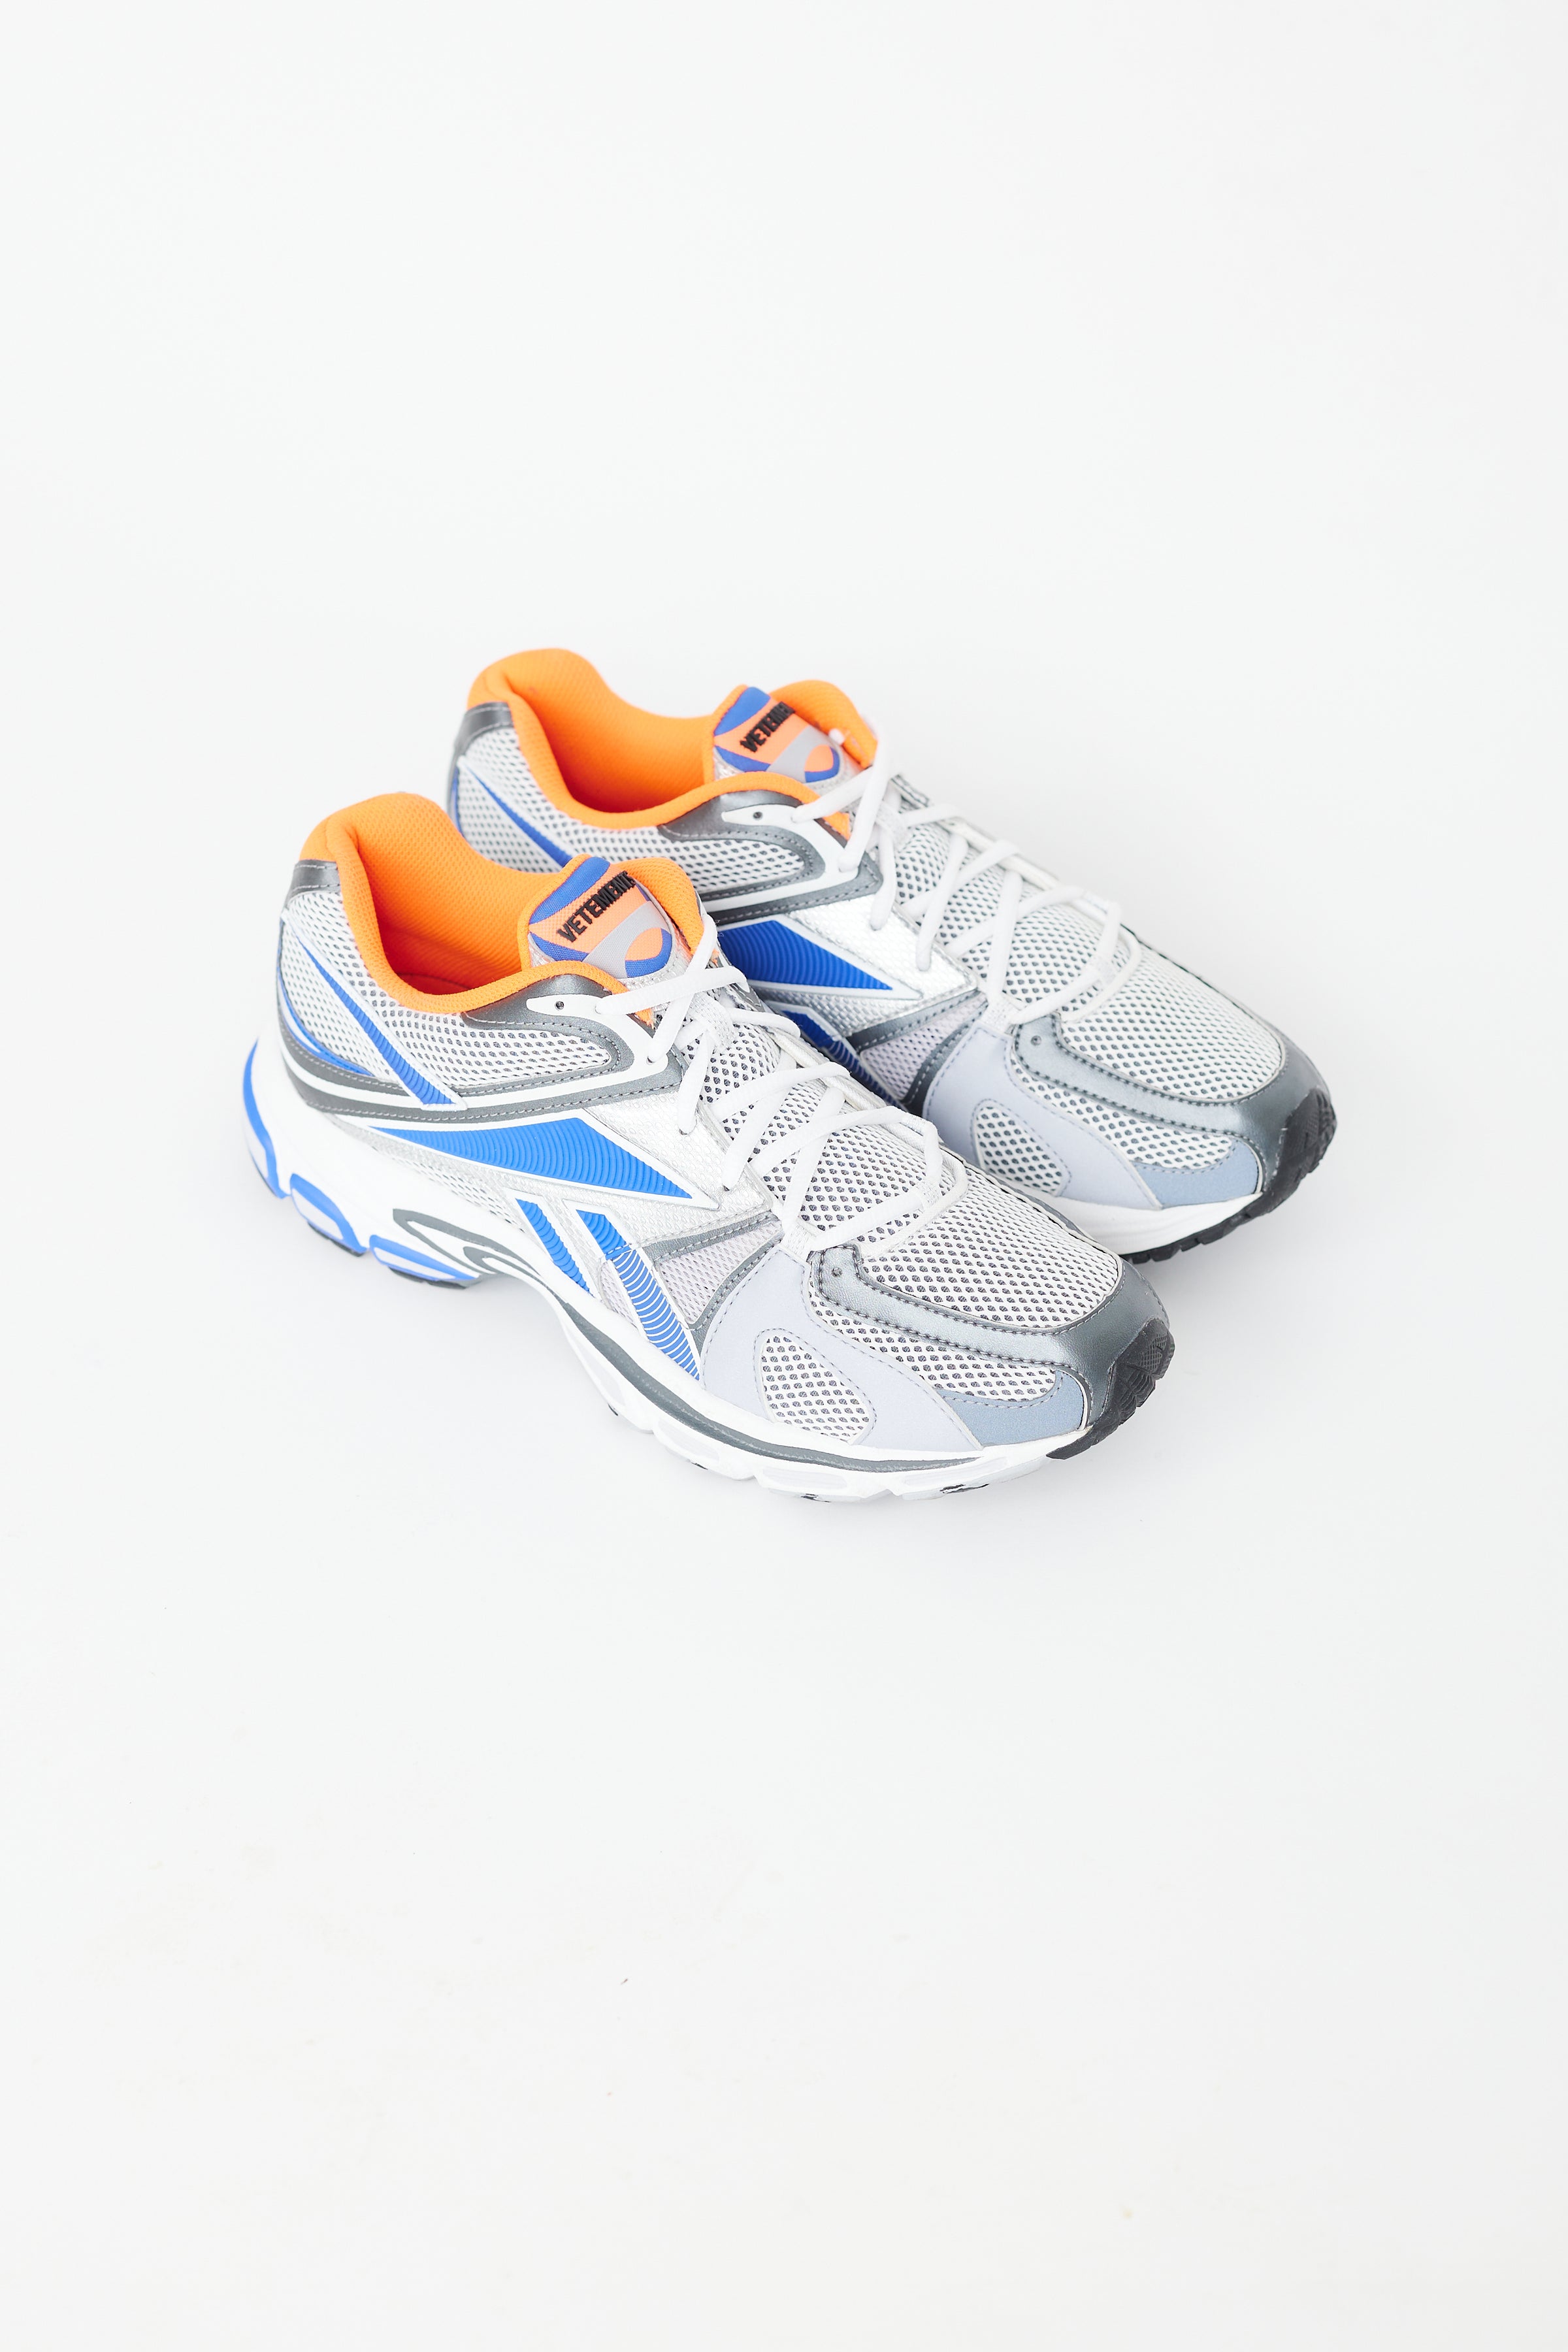 Vetements // X Reebok Blue & White Spike Runner 200 Sneaker – VSP 